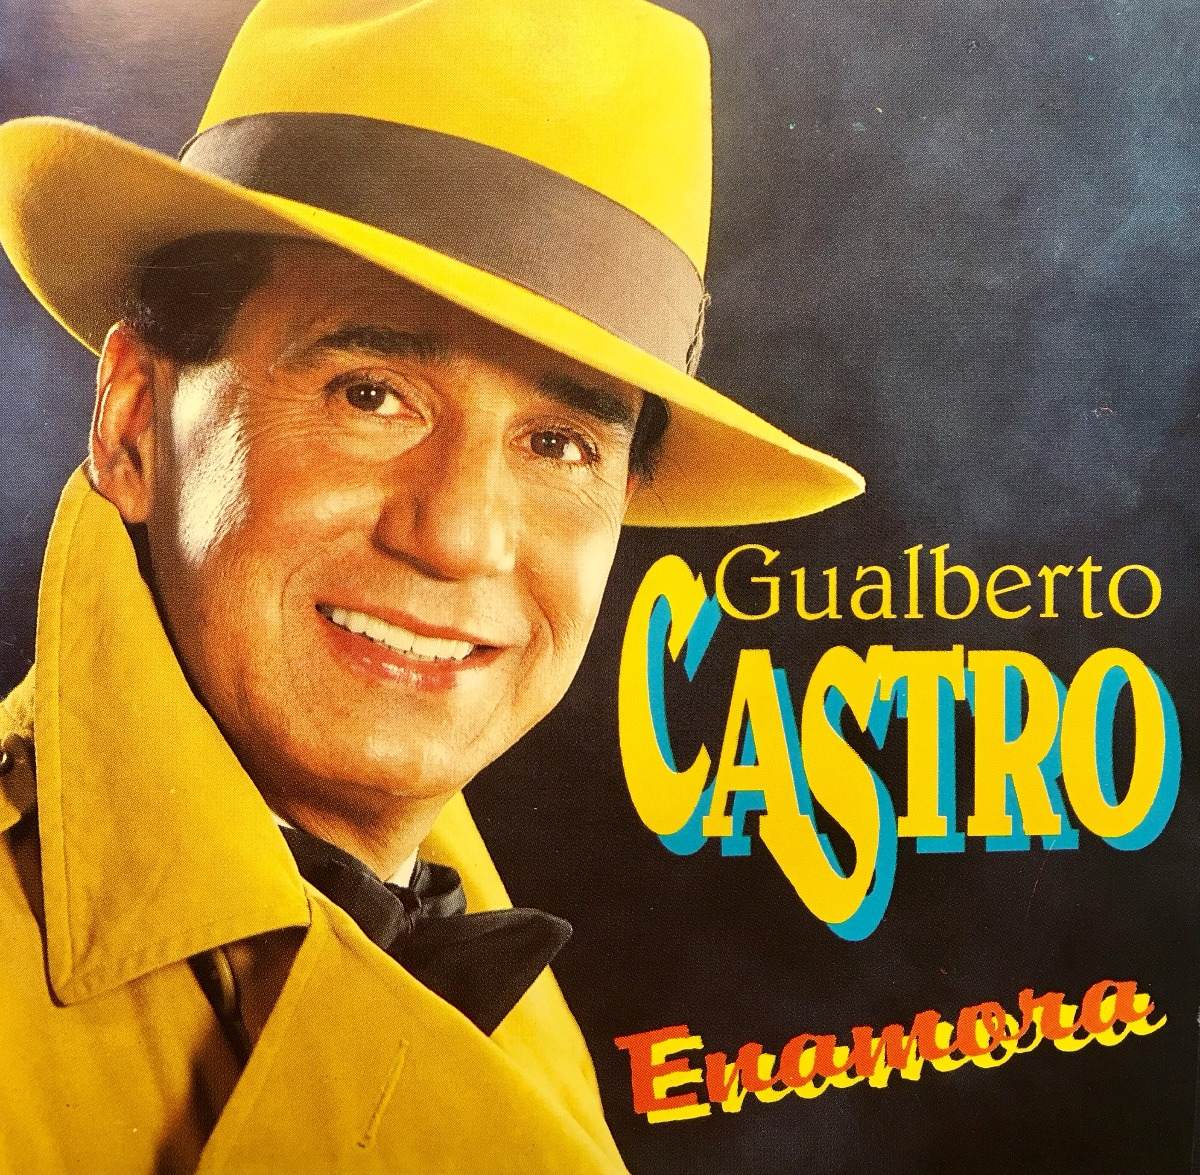  Cantante Gualberto Castro fallece a los 84 años